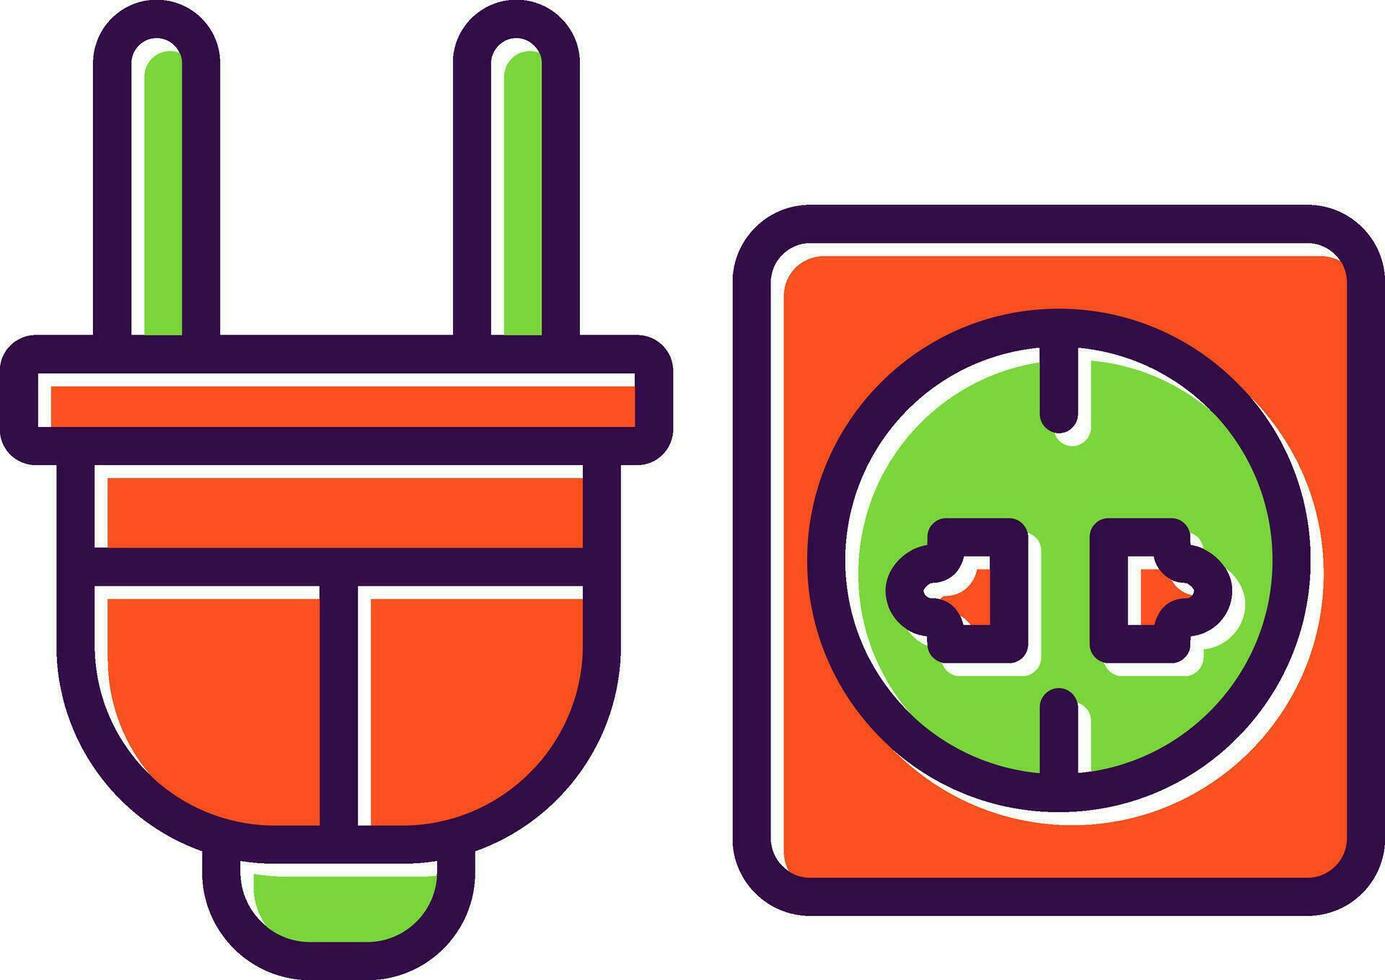 design de ícone de vetor de soquete de energia